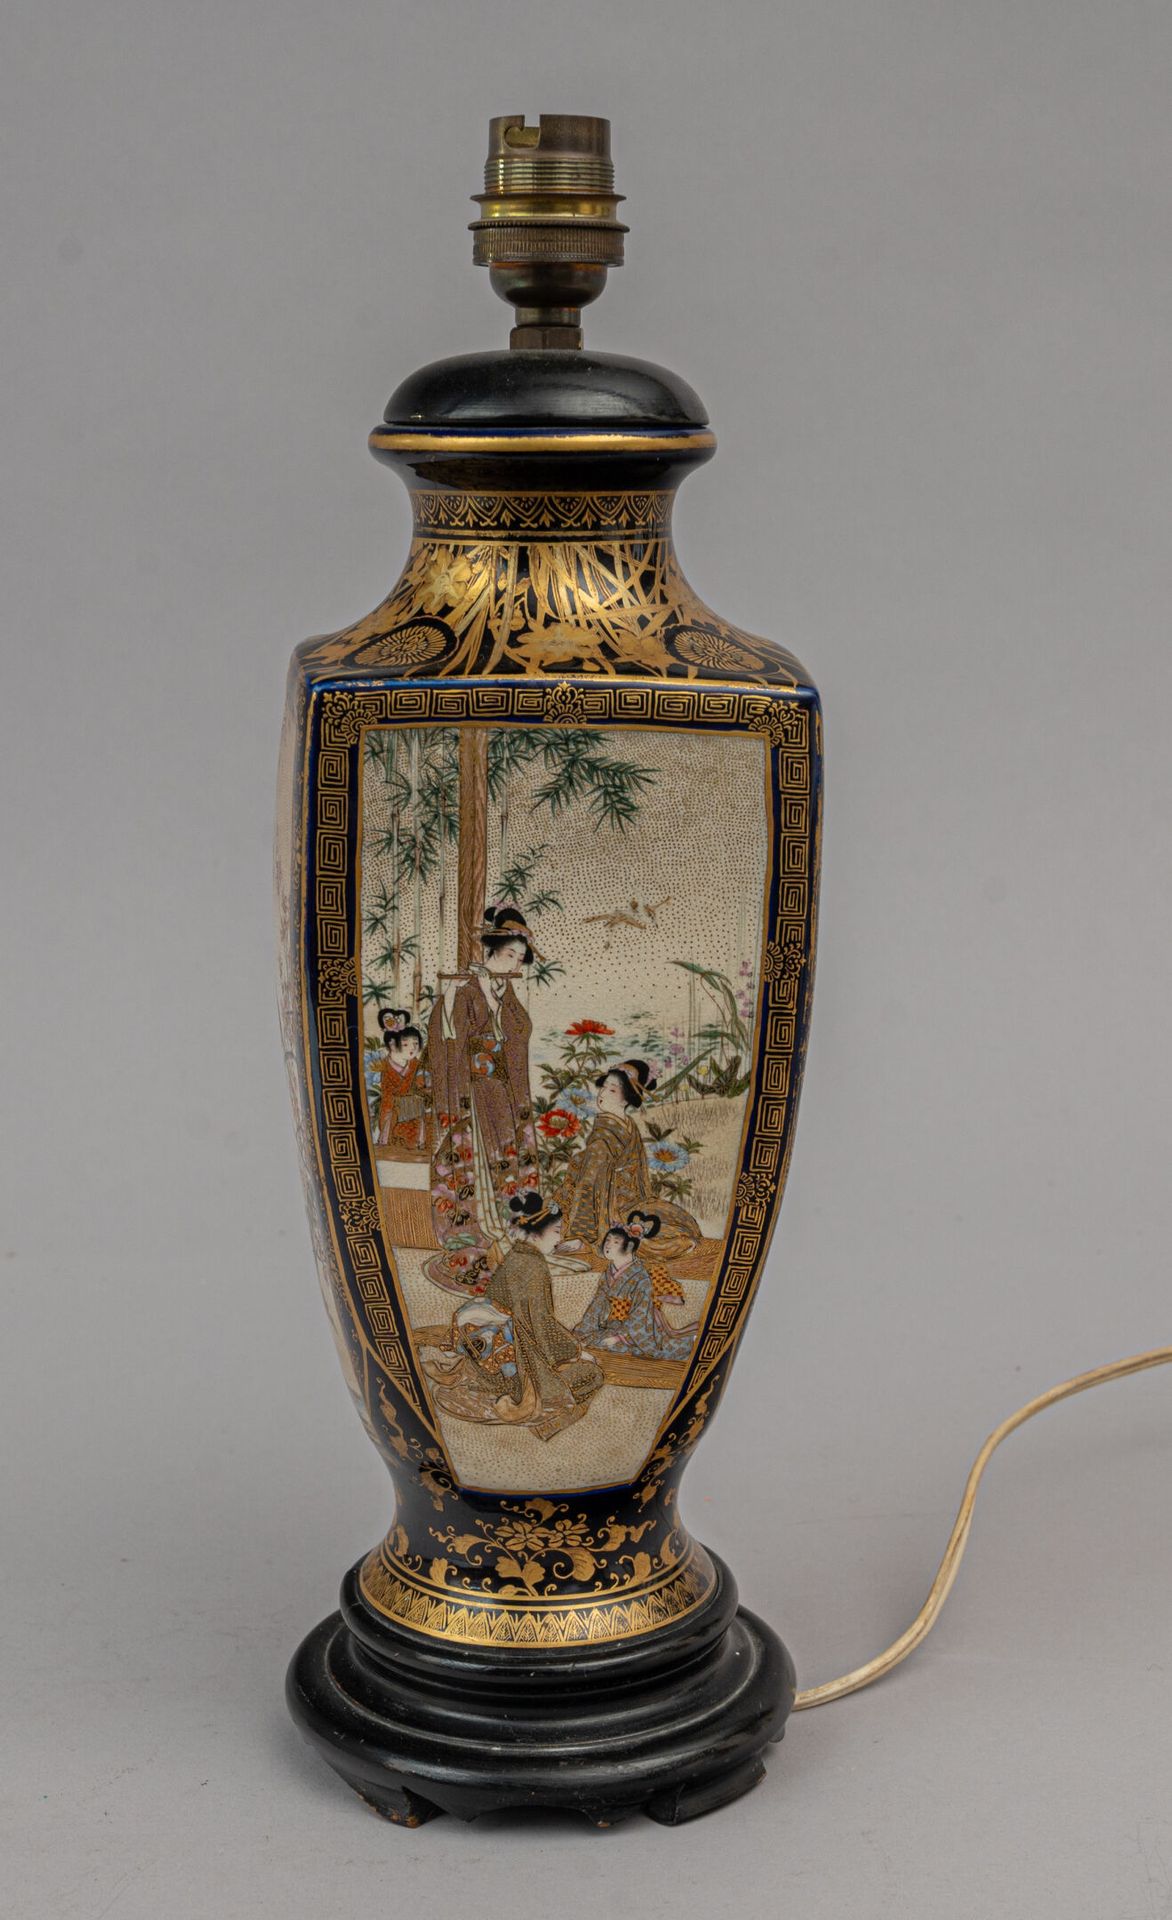 Null 萨摩陶瓶，日本，明治时代（1868-1912 年）
瓶颈和瓶底呈圆形，但肩部呈方形，装饰有四个大型场景，其中两个是具象的（花园中的妇女在紫藤或竹子间）&hellip;